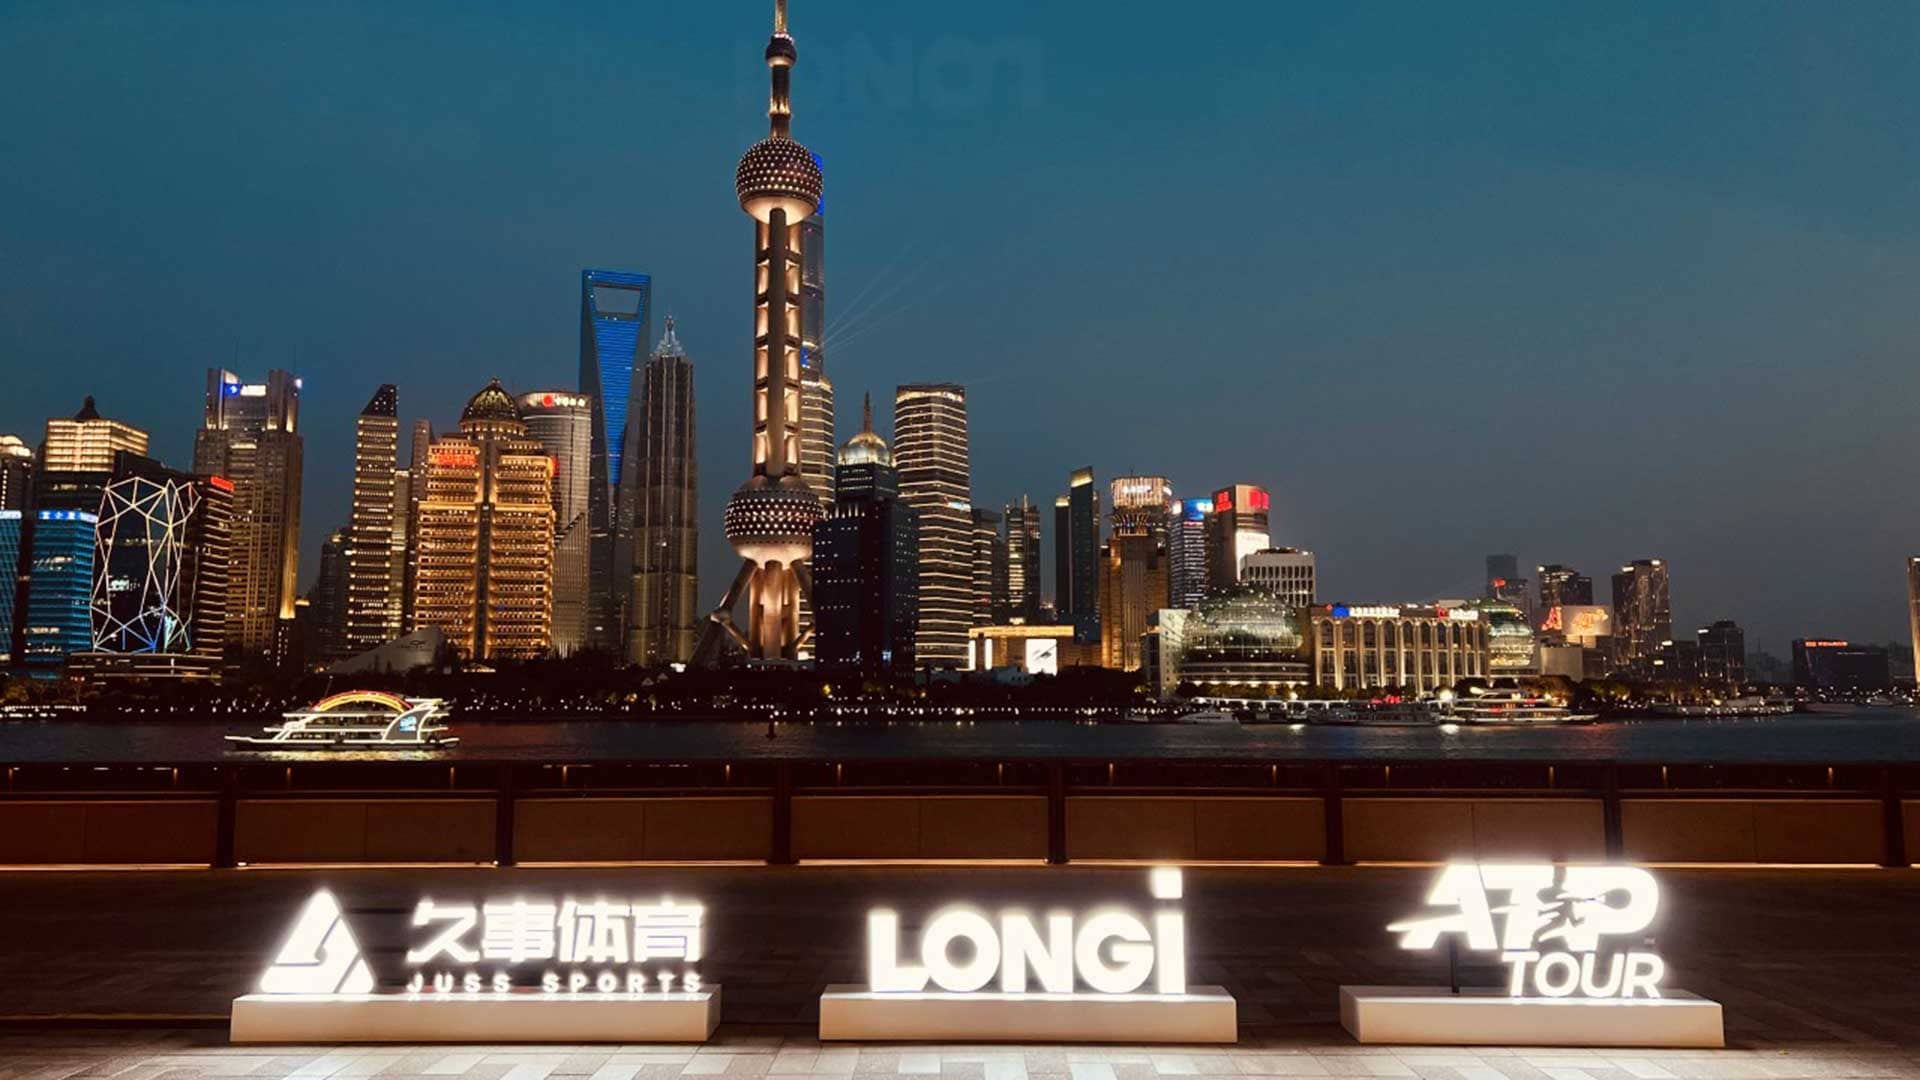 Fundada en 2000, LONGi está comprometida a convertirse en la compañía líder mundial en tecnología de energía solar.